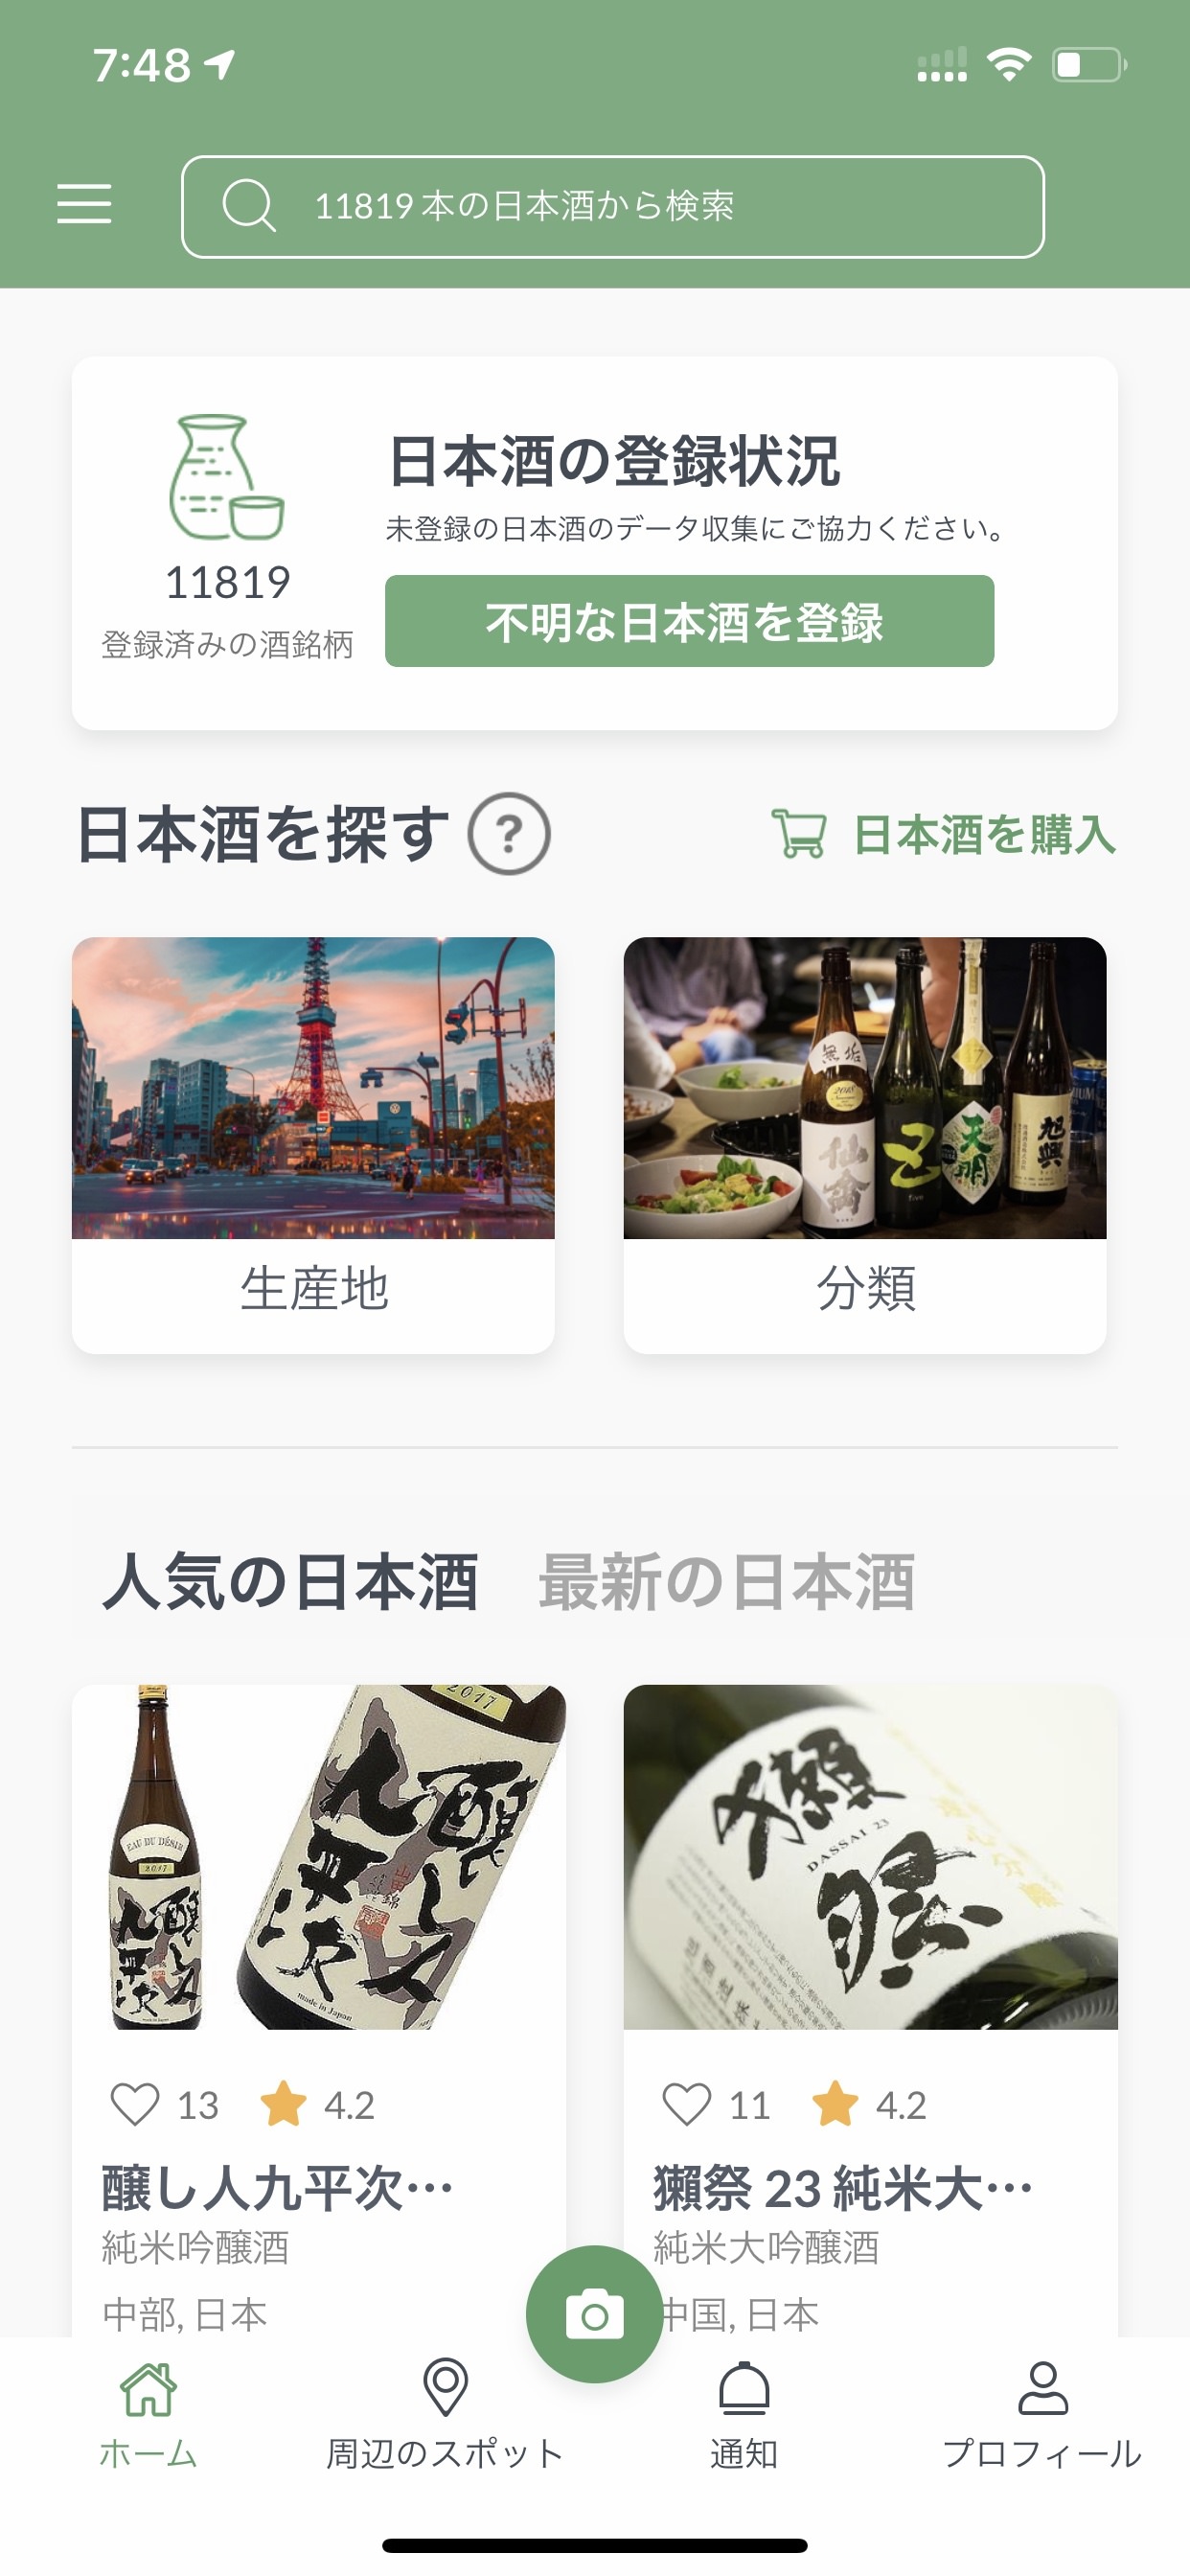 日本酒SNSアプリ「SakeWiz」ユーザーが選ぶ
日本酒ランキングを発表